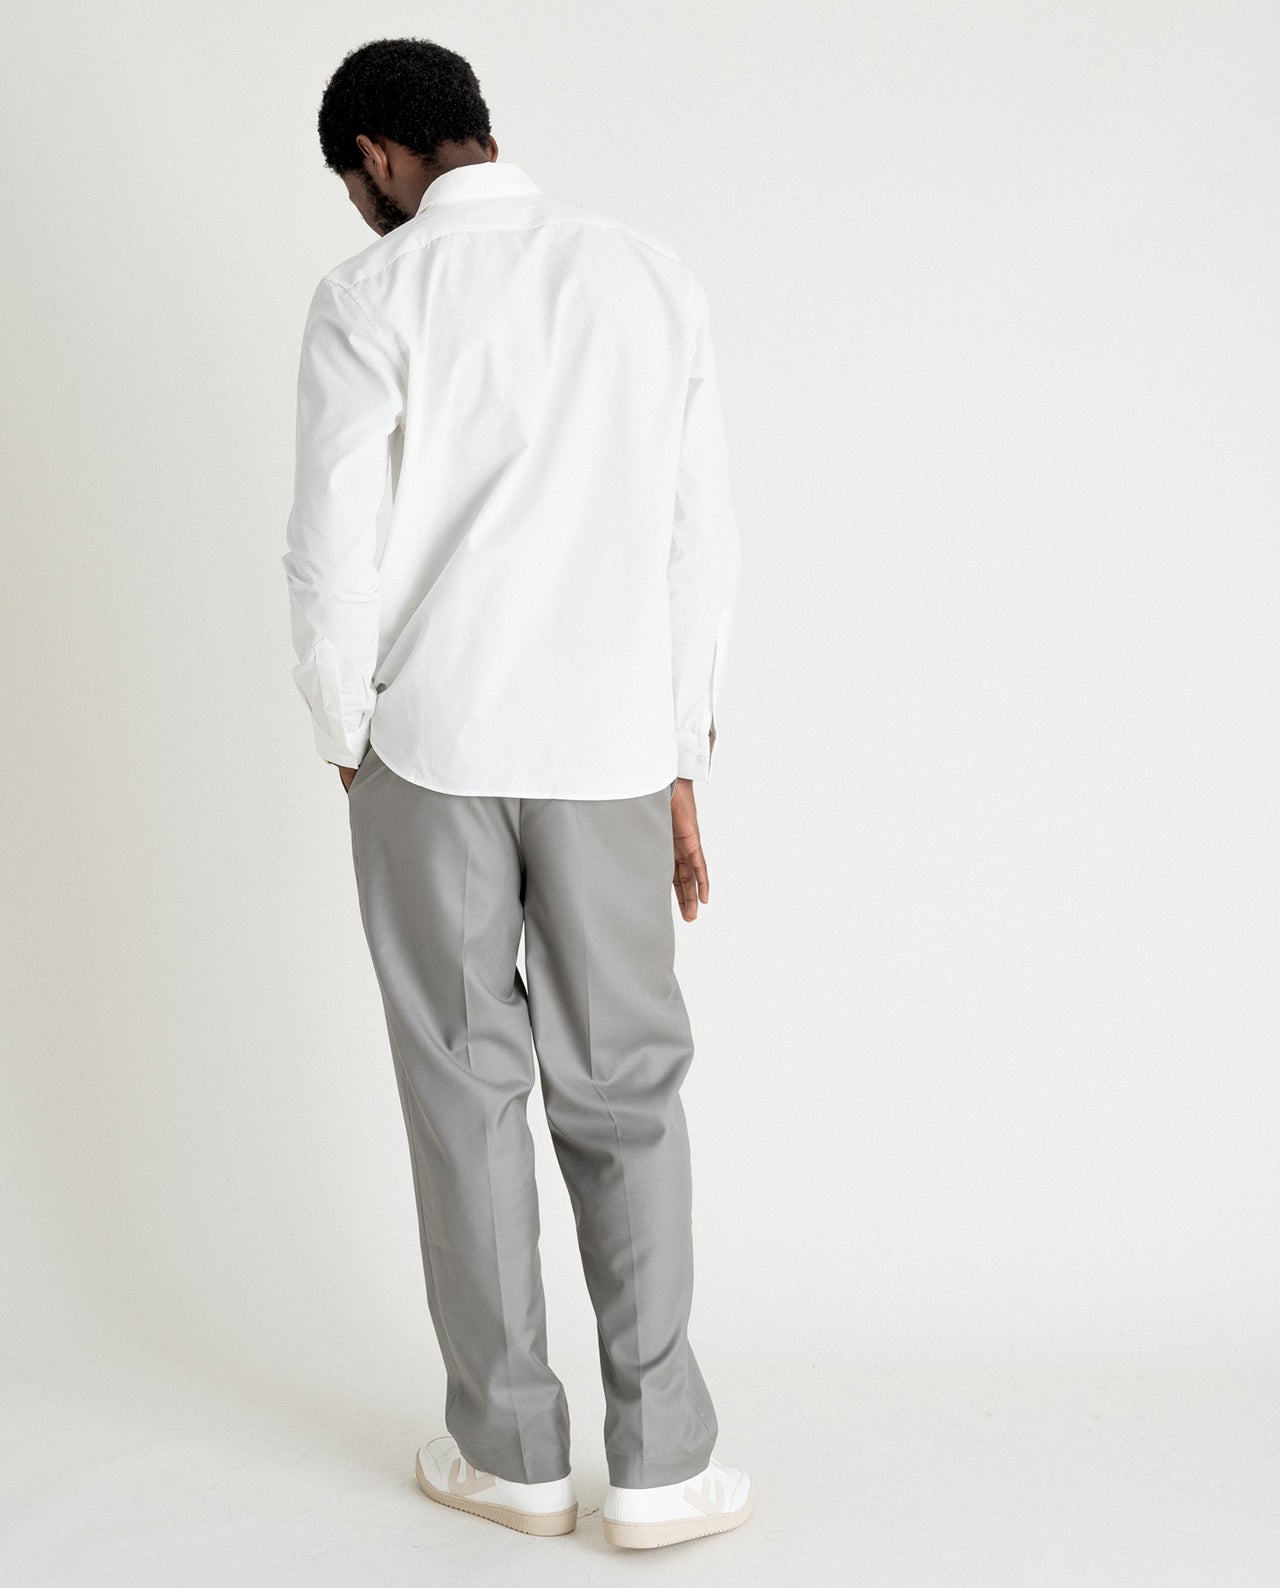 marché commun noyoco chemise blanche homme curtis coton upcyclé éco-responsable